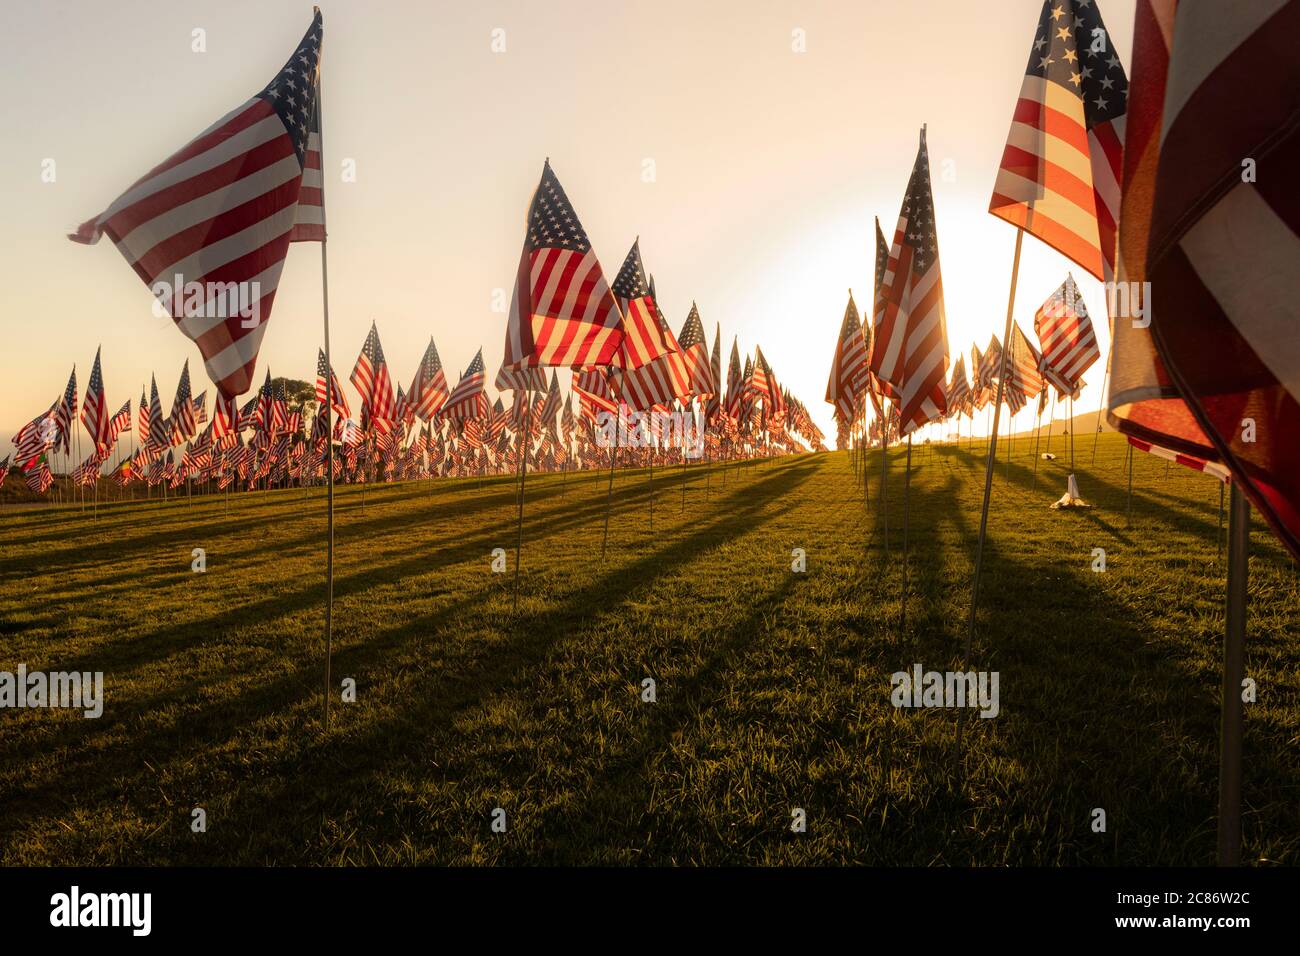 Alumni Park Malibu - Flaggen zur Erinnerung an 9/11 Terroranschläge Stockfoto